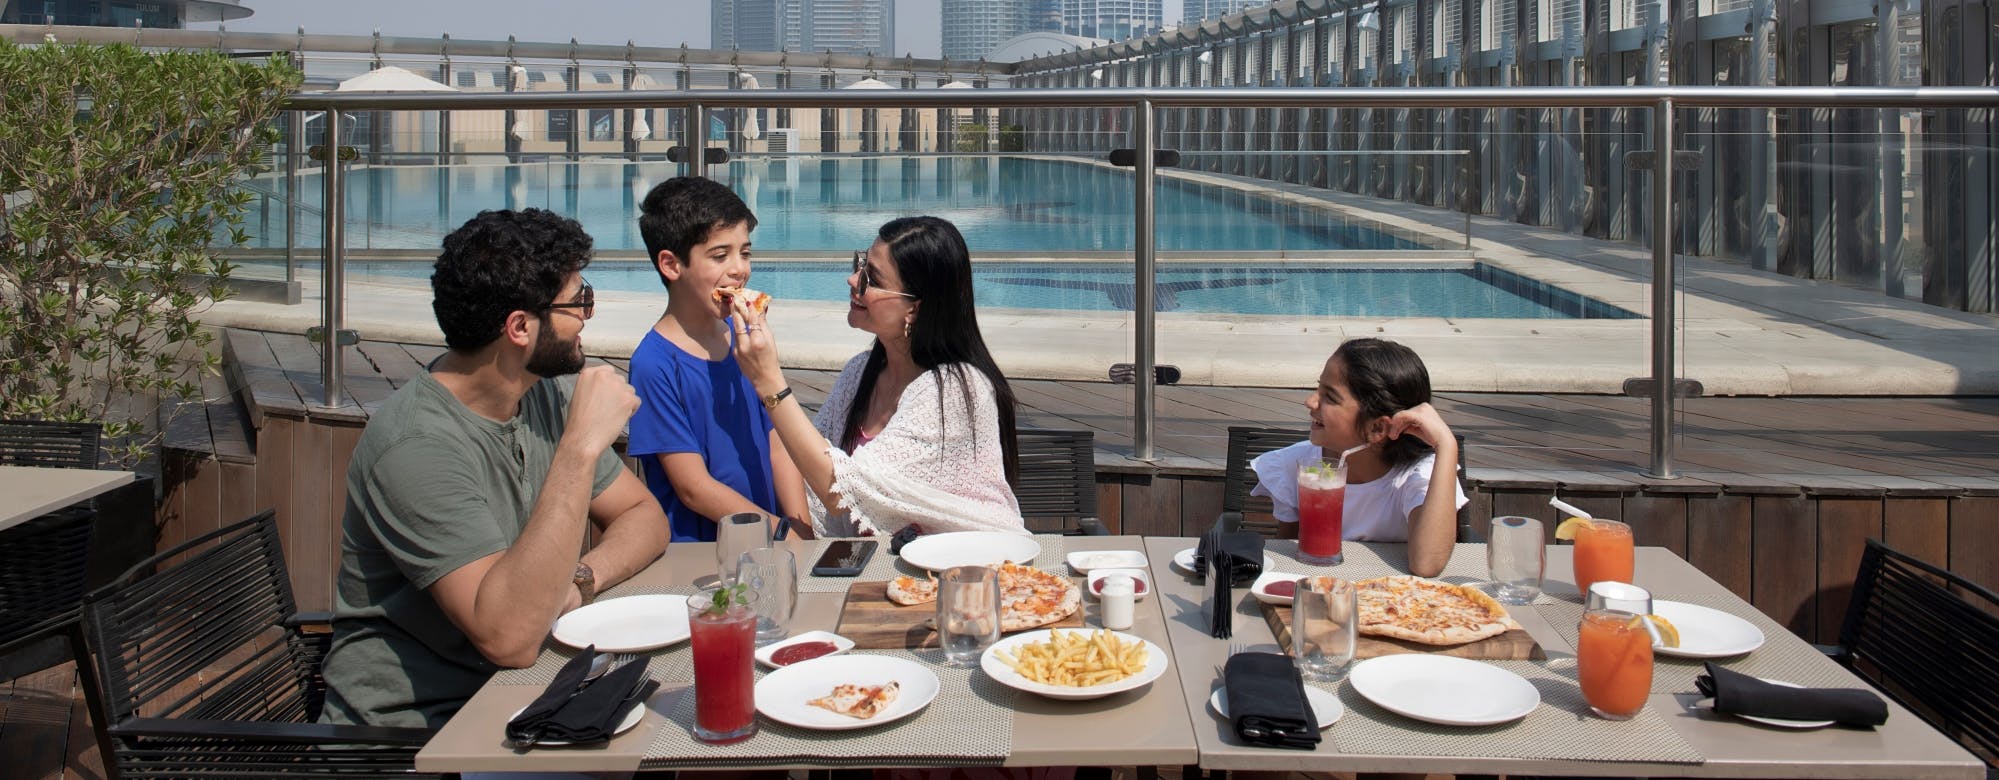 Burj Khalifa biljetter och 3-rätters måltid på takterrassen